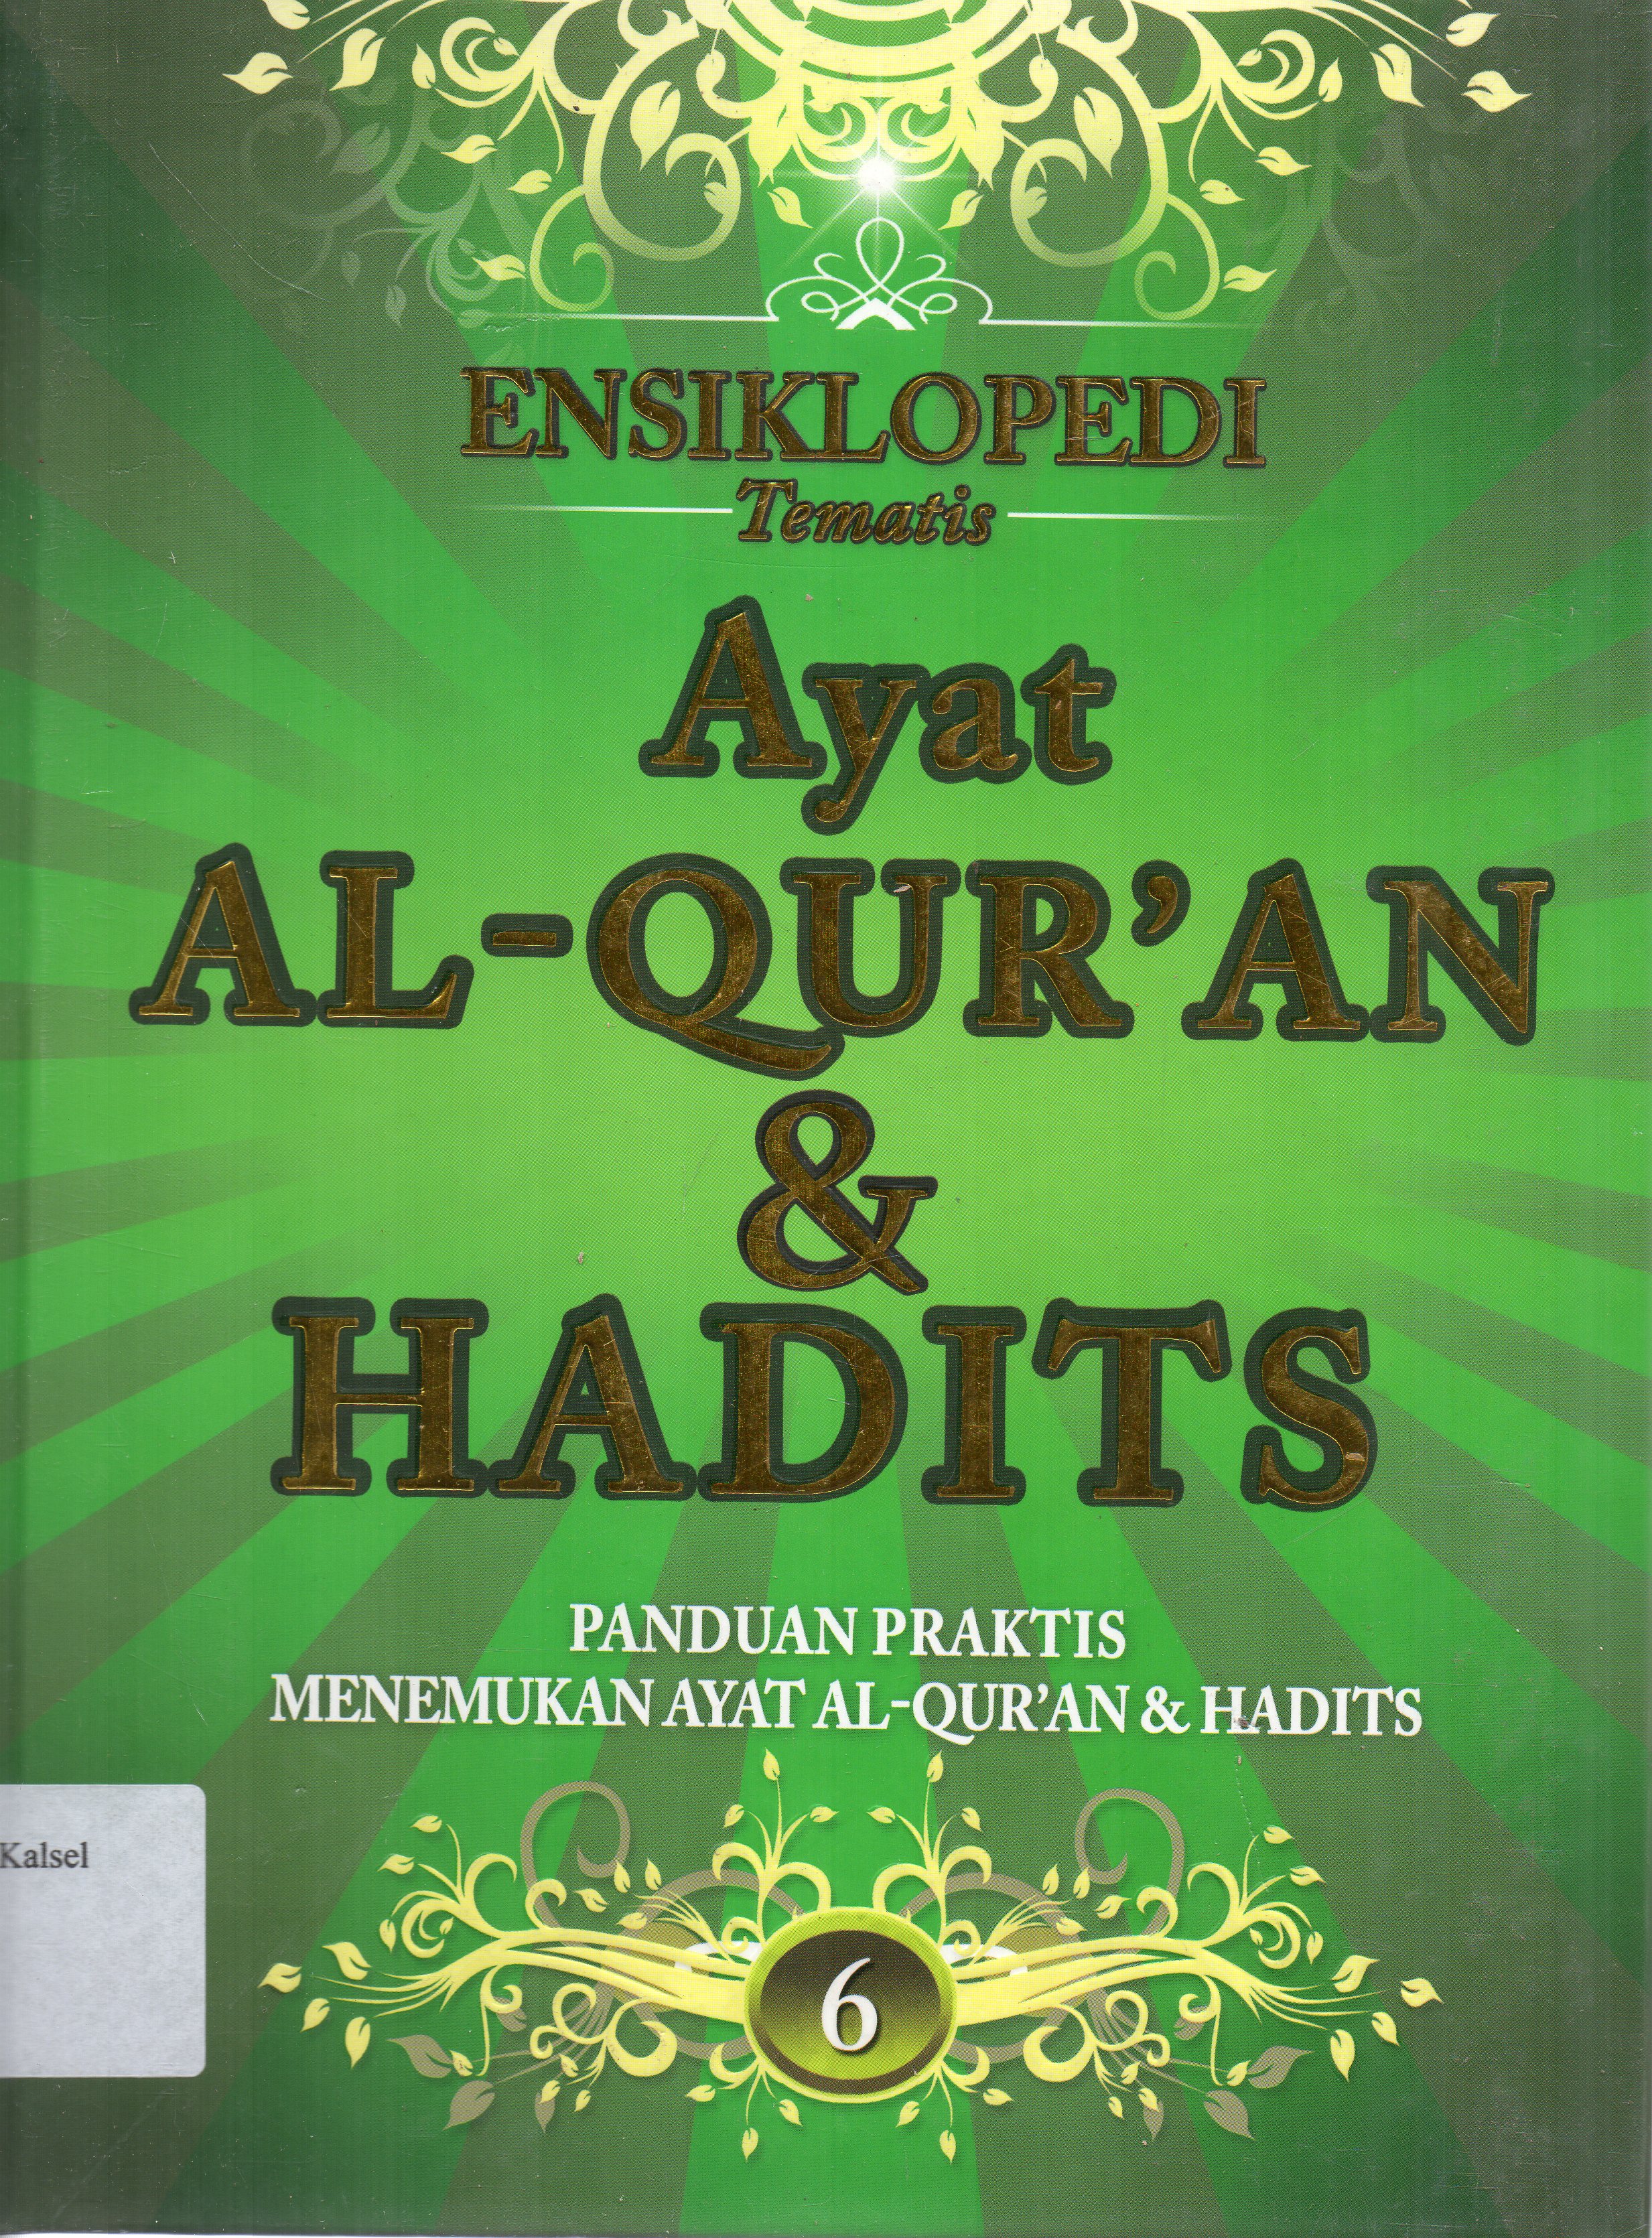 Ensiklopedi tematis ayat Al Qur'an dan hadist jilid 6 :  panduan praktis menemukan ayat Al Qur'an dan hadist